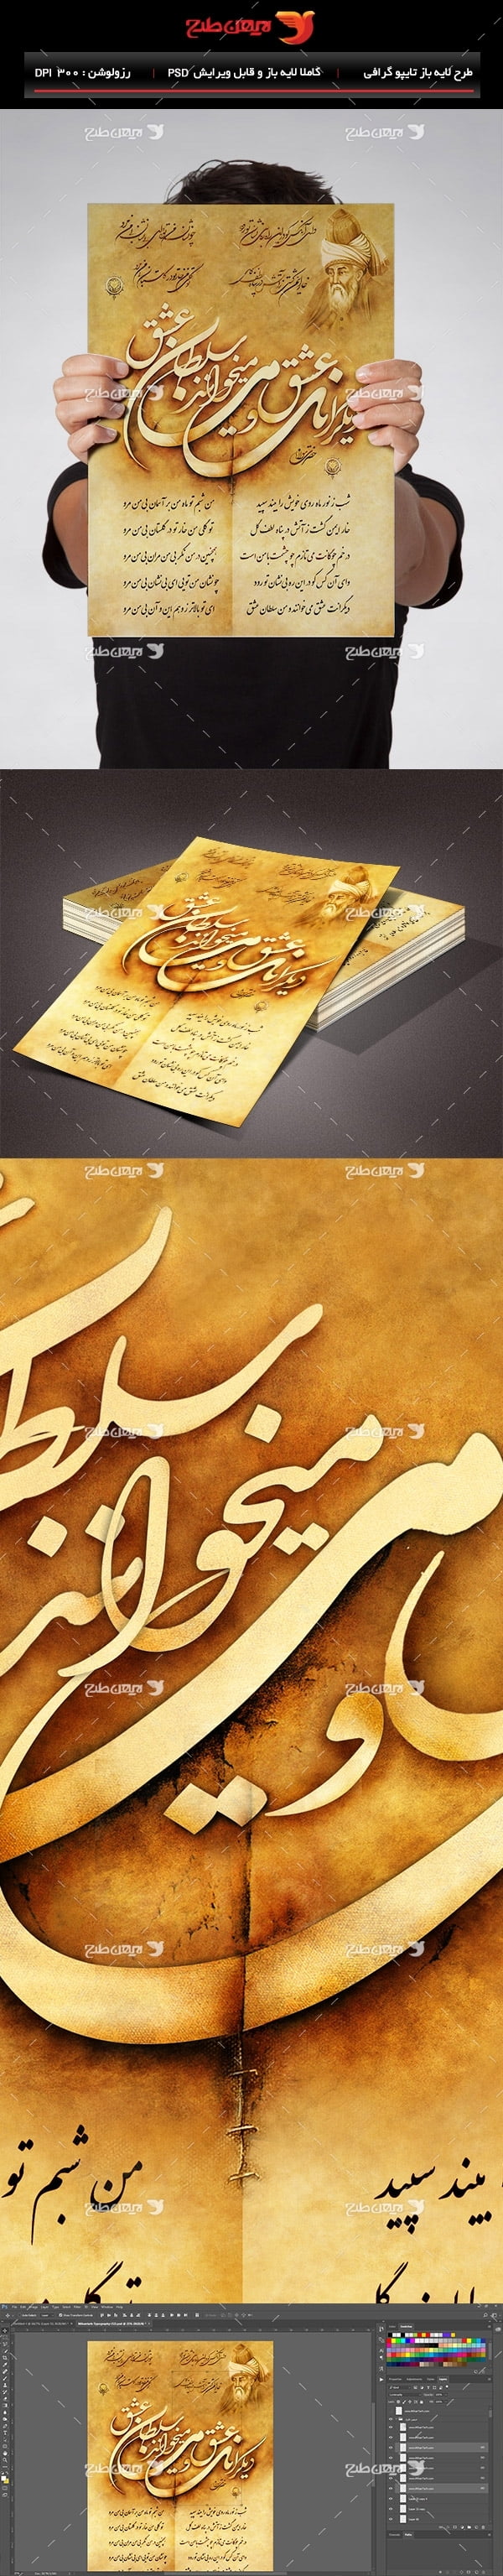 طرح لایه باز تایپوگرافی و خطاطی شعر مولانا